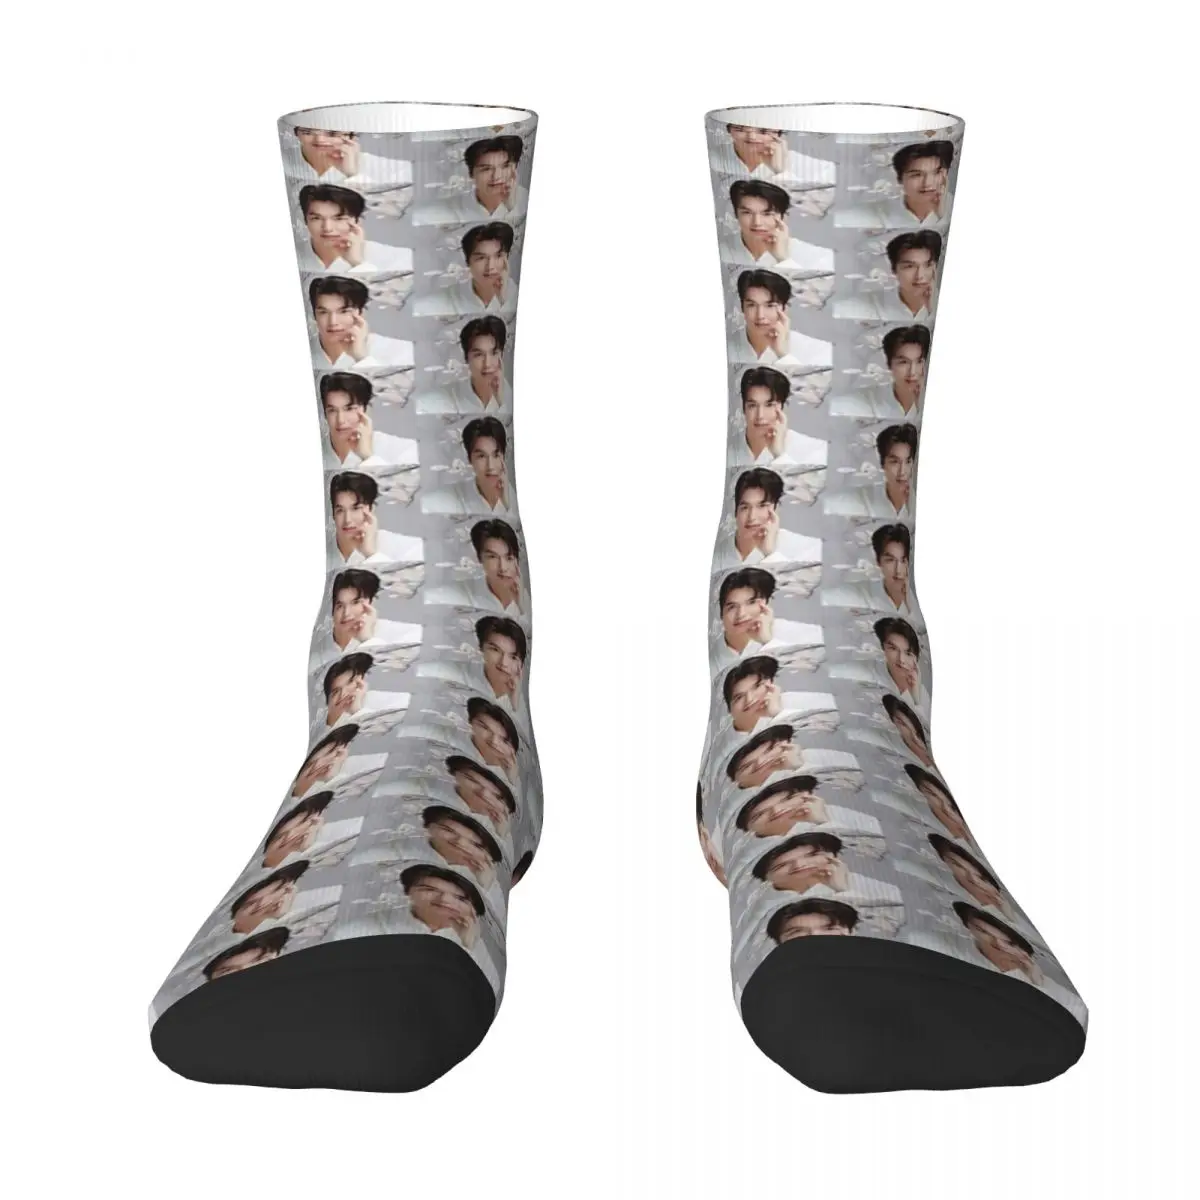 Lee Min Ho Adult Socks,Unisex socks,men Socks women Socks